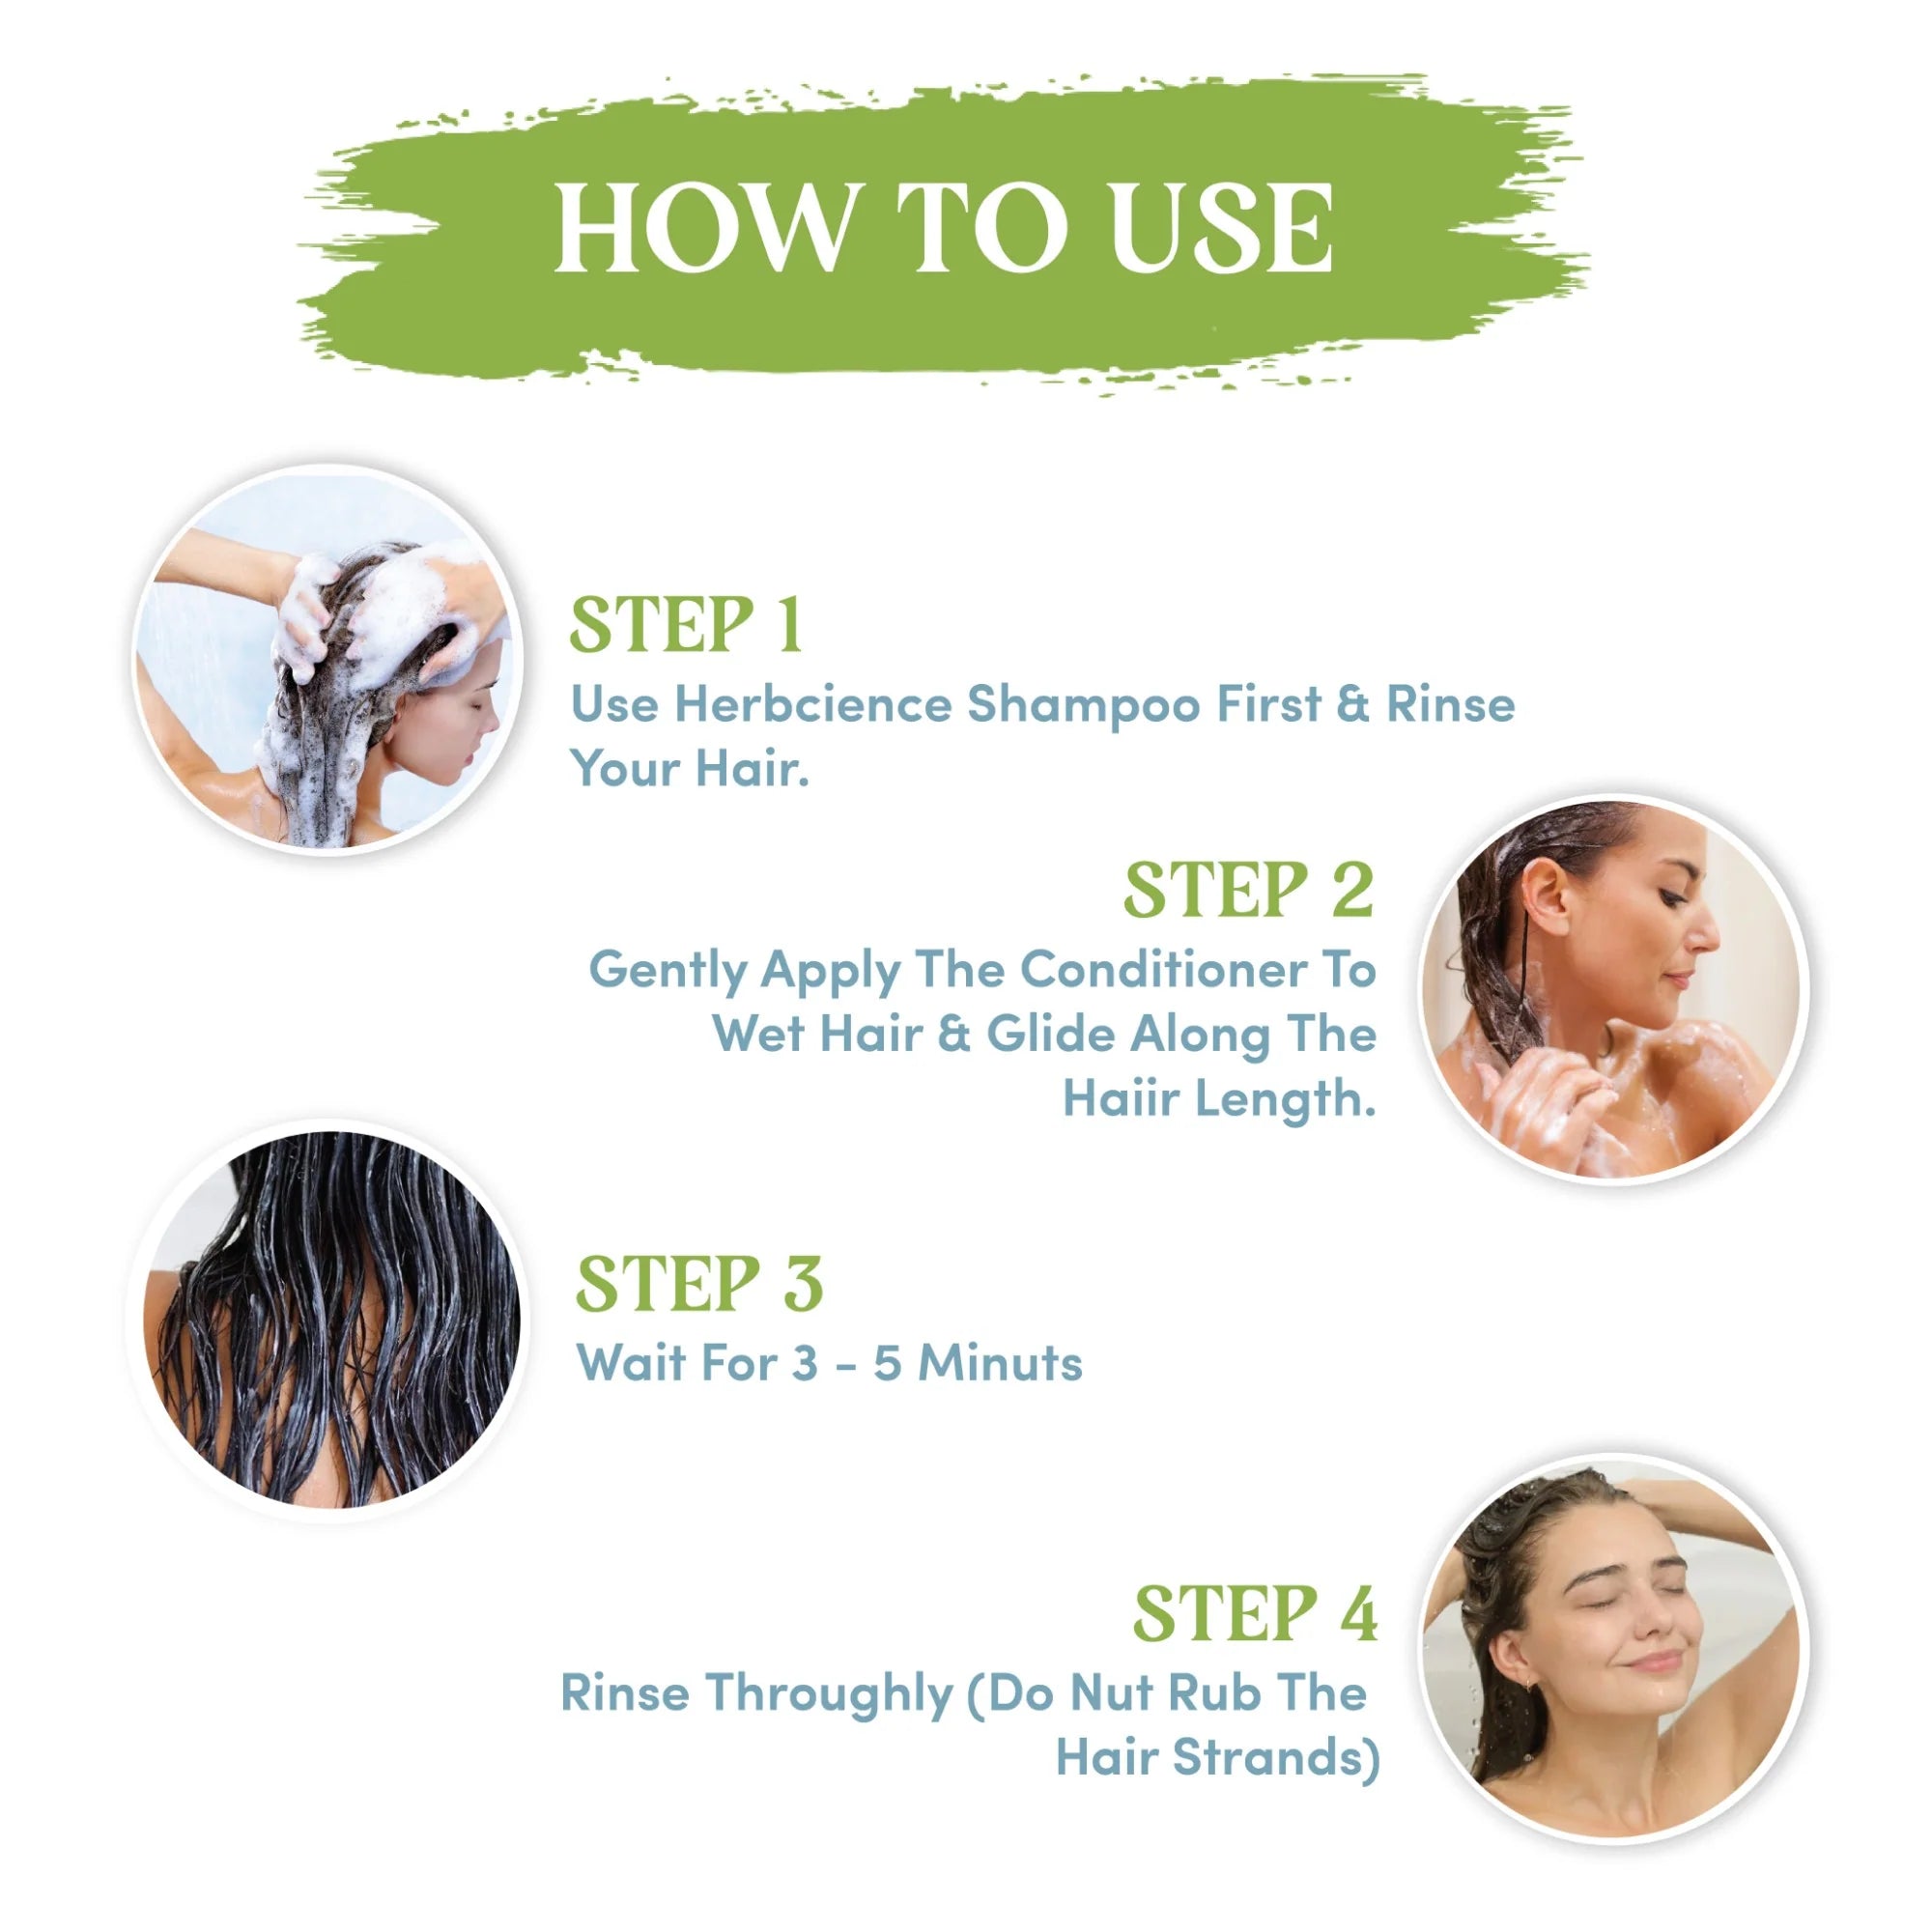 Keratin Hair Treatment Kit - 300 ML (Shampoo + Conditioner)